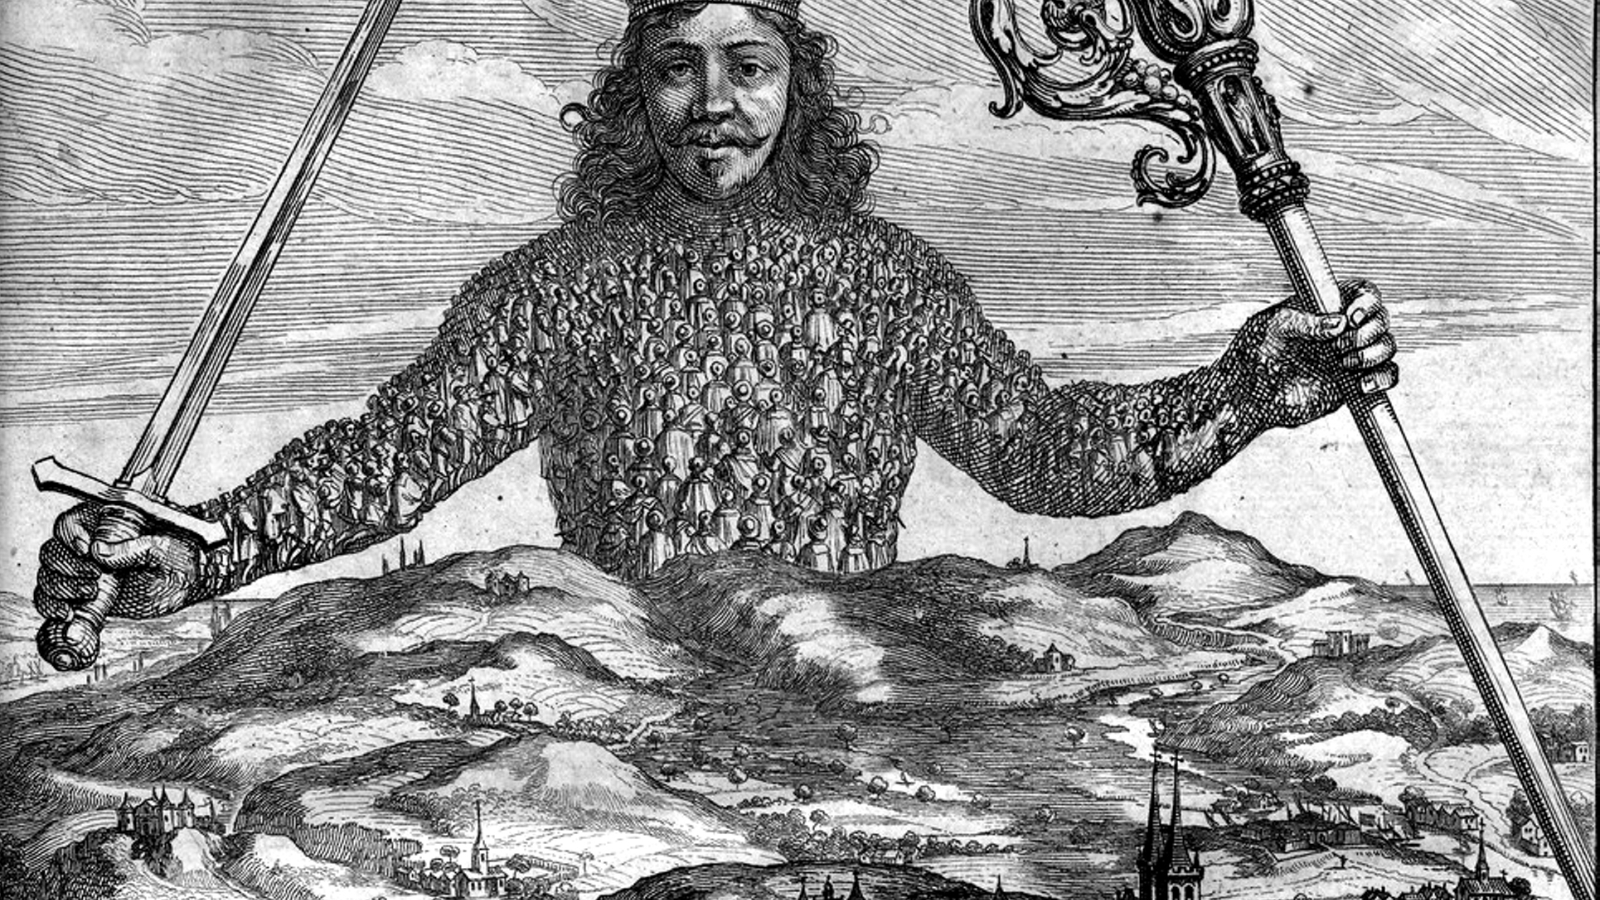 Fra forsiden til Thomas Hobbes' "Leviathan" (1651), illustrasjon av Abraham Bosse.